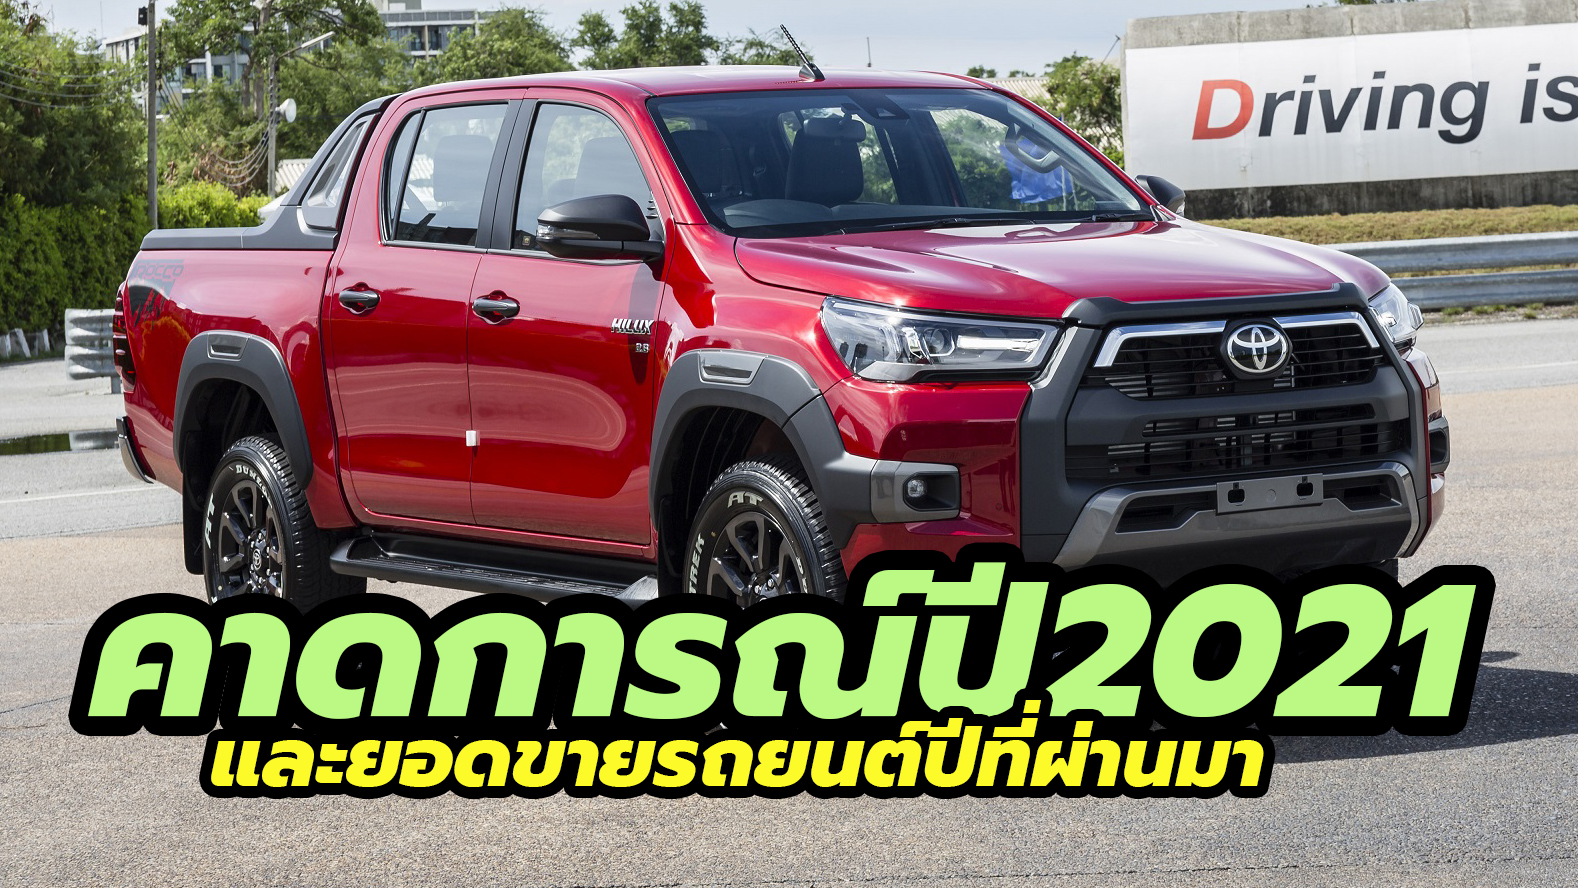 2020 Car Sales Thailand